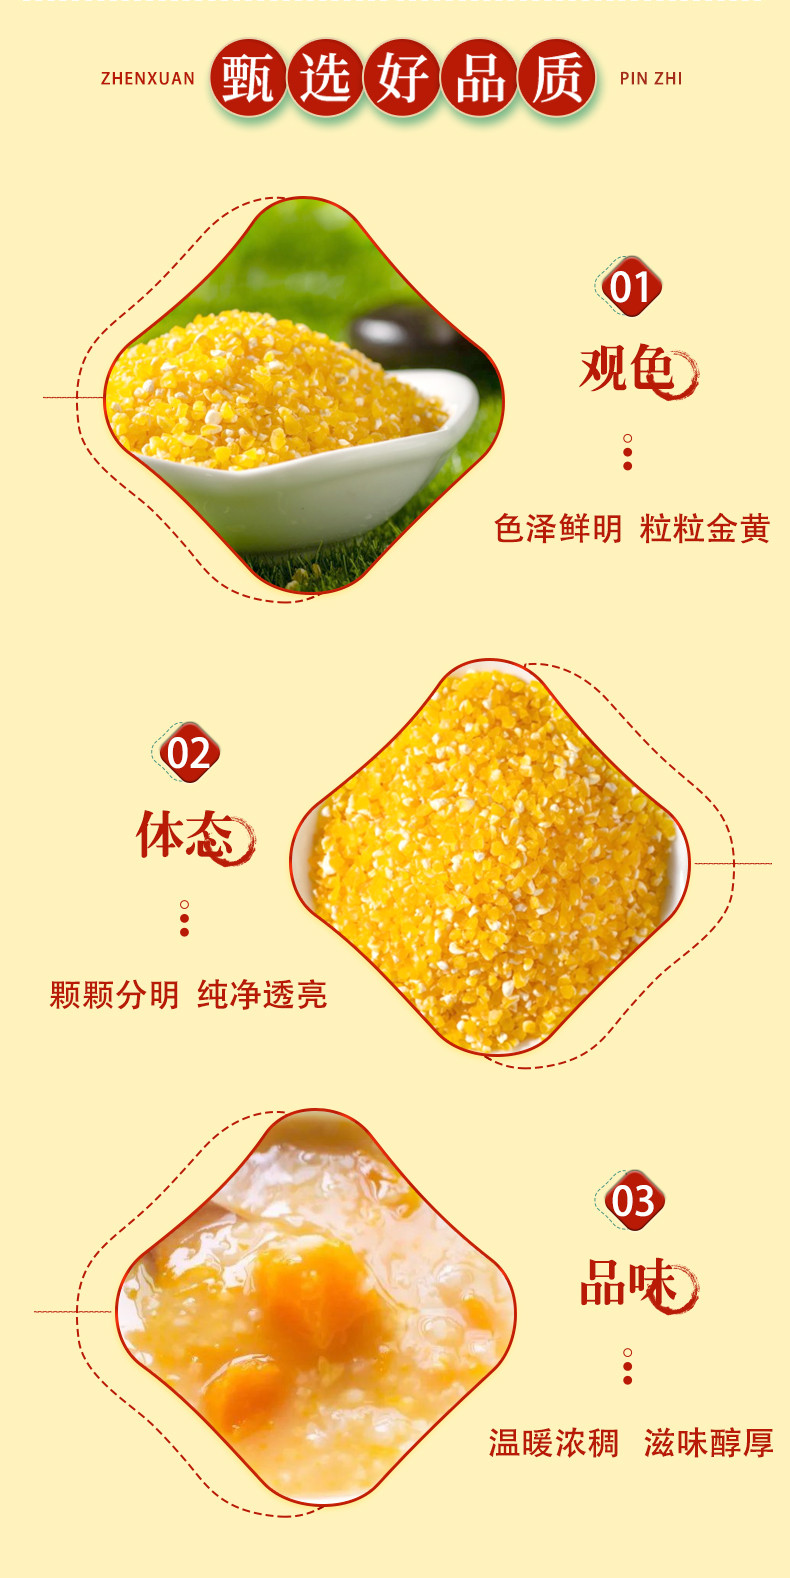 北纯 有机玉米碴1.5kg罐装东北杂粮粗粮粥饭 无添加 不染色